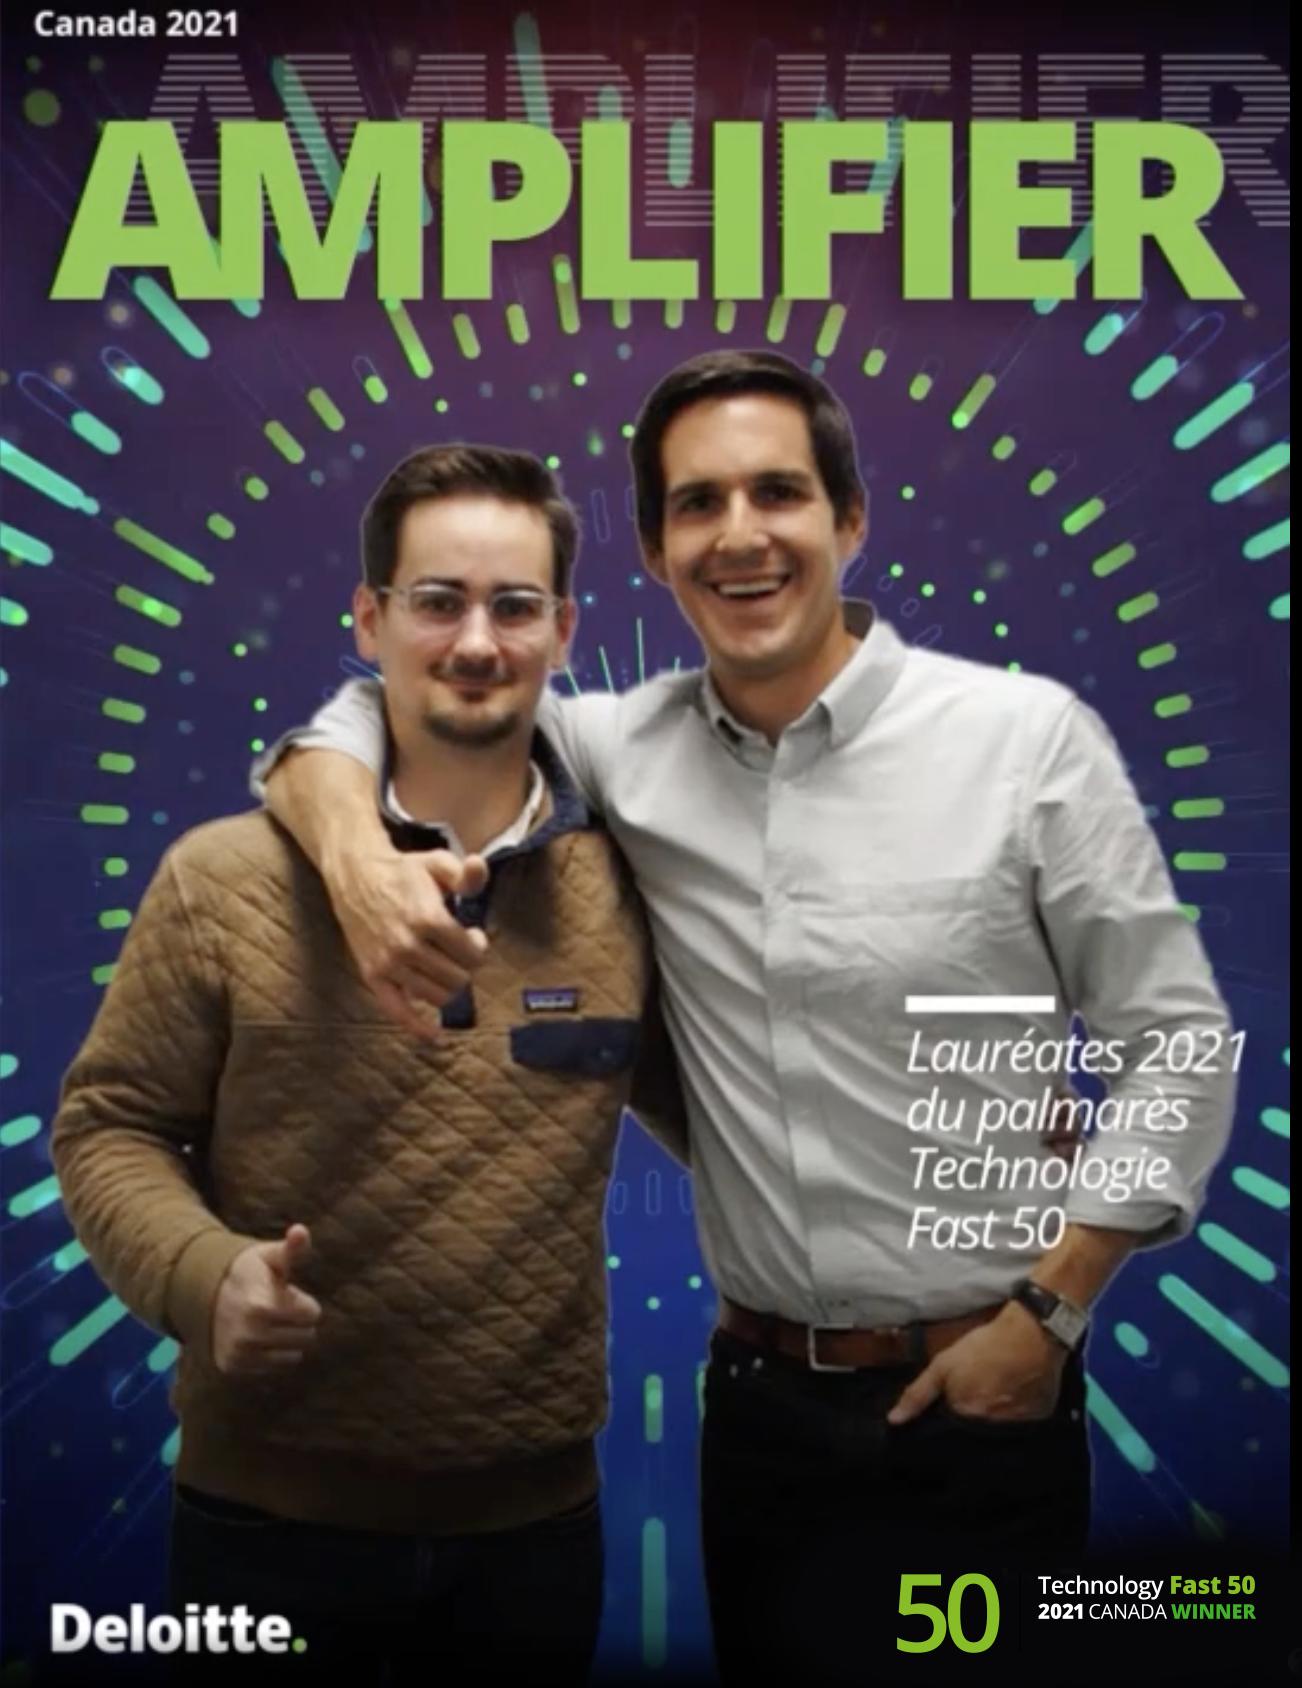 Les fondateurs de Poka sur la couverture du magasine Amplifier.